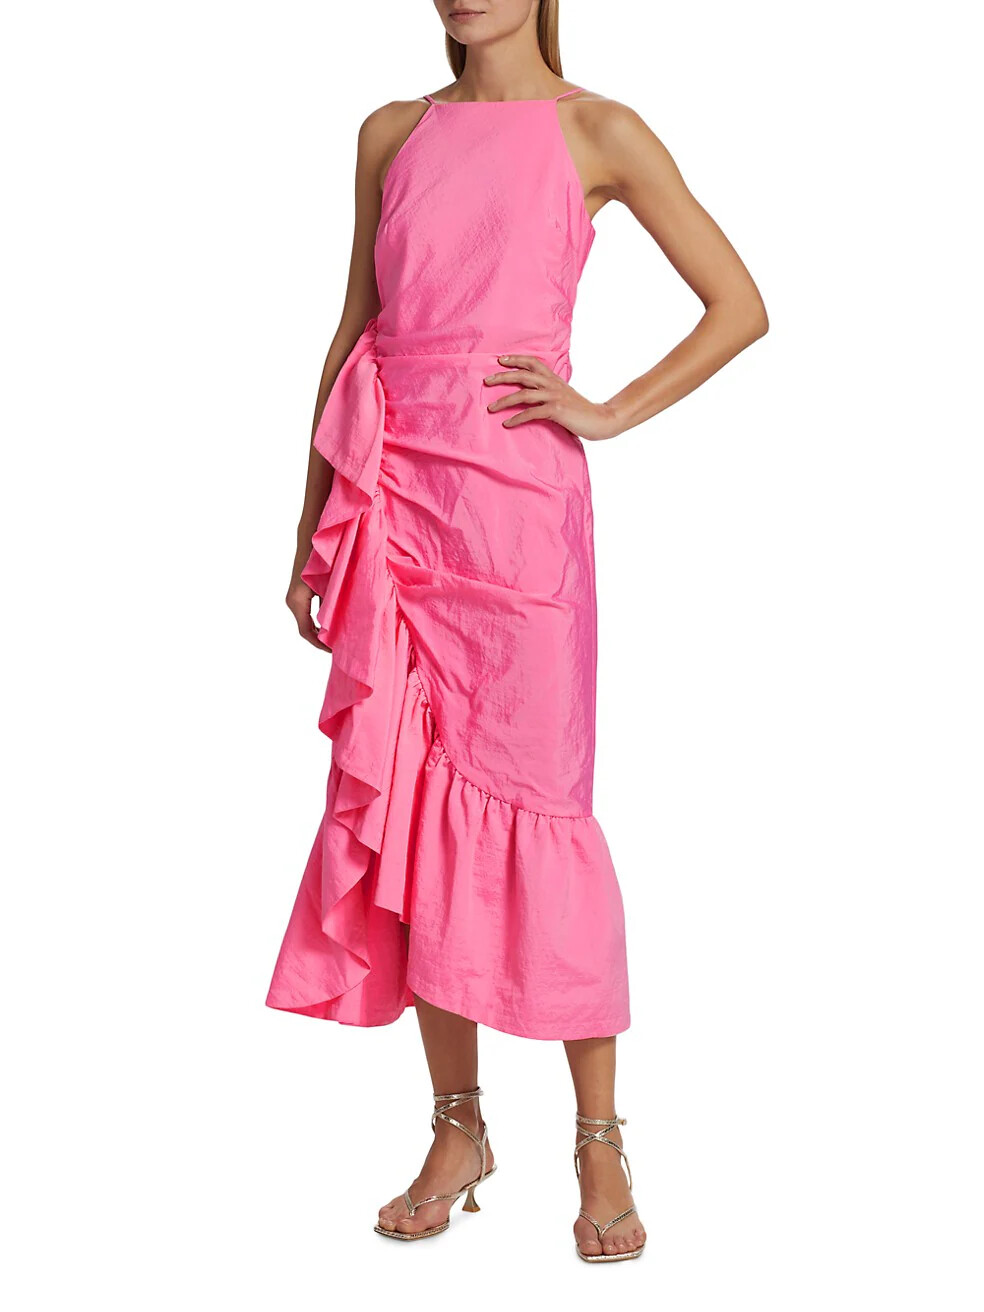 Cinq a Sept Neena Dress in Flamingo